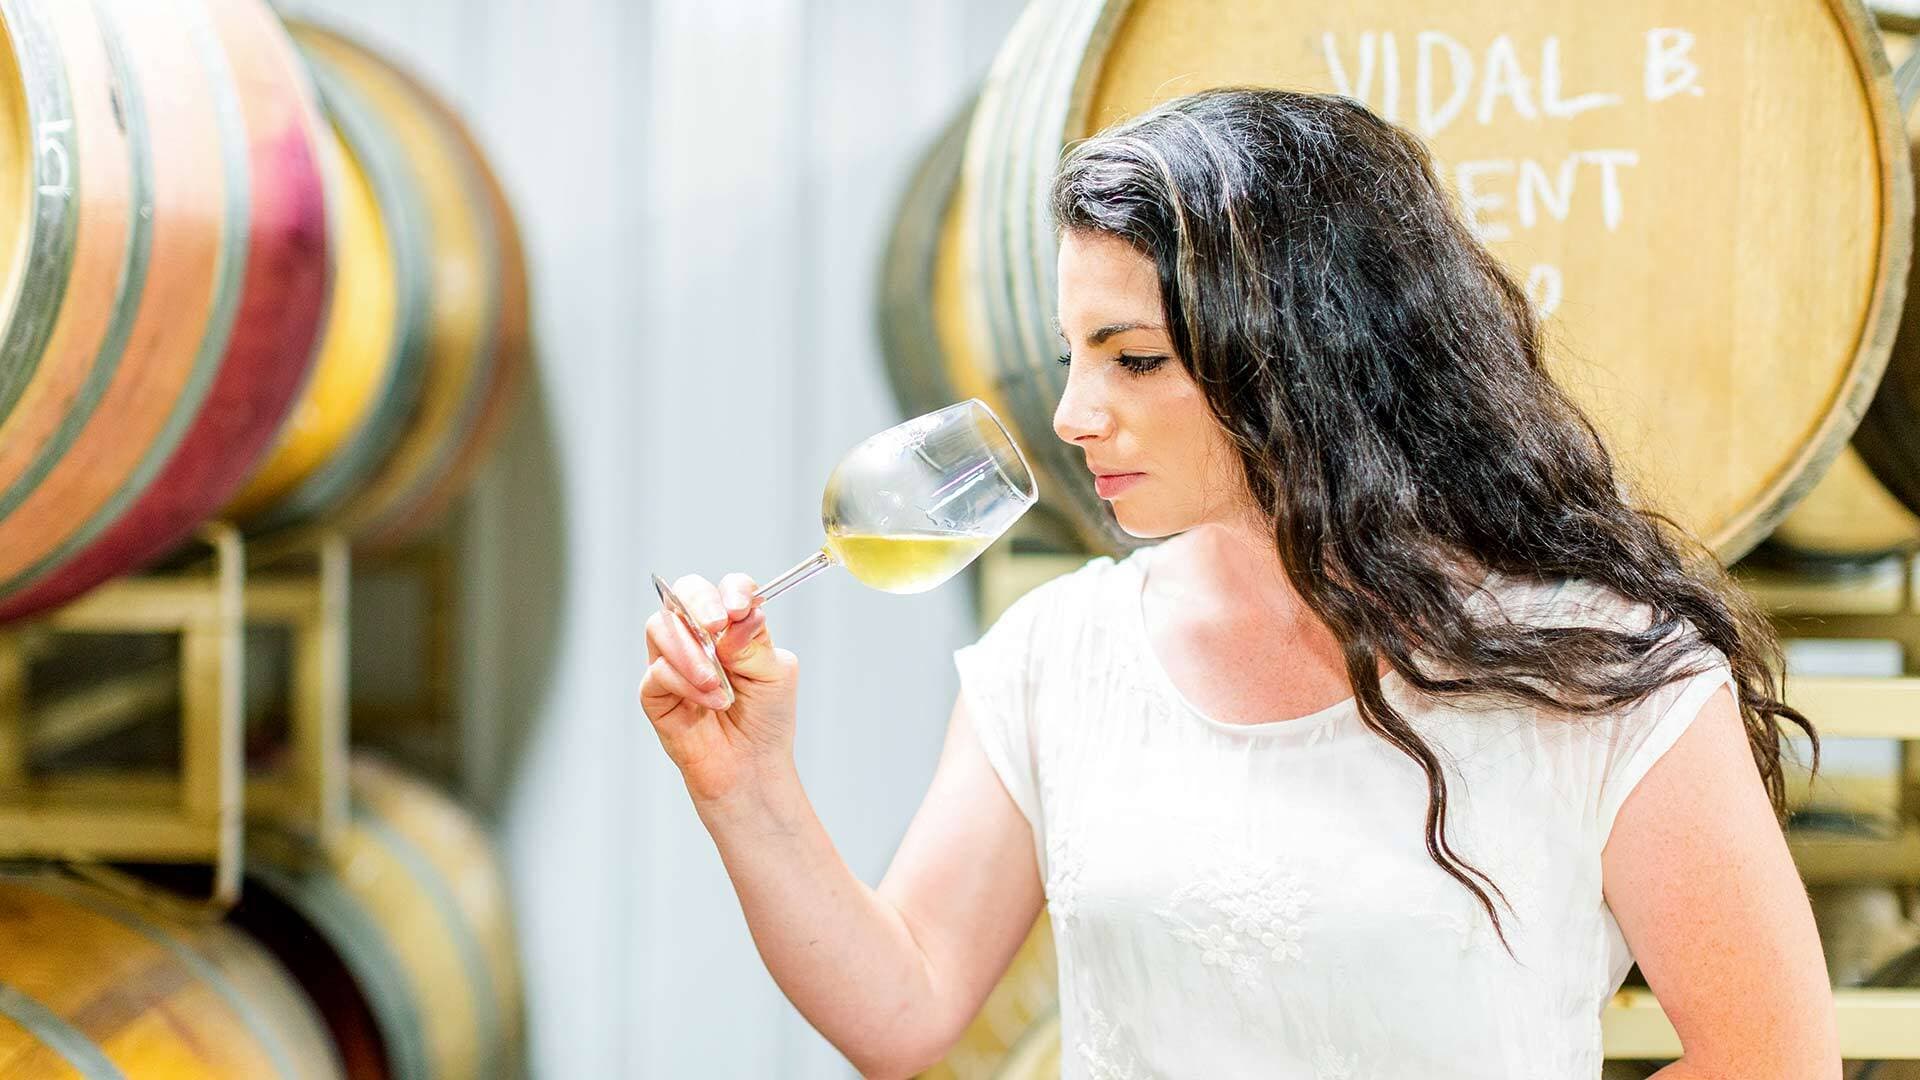 Rachel Loew-Lipman '15 smelling glass of wine